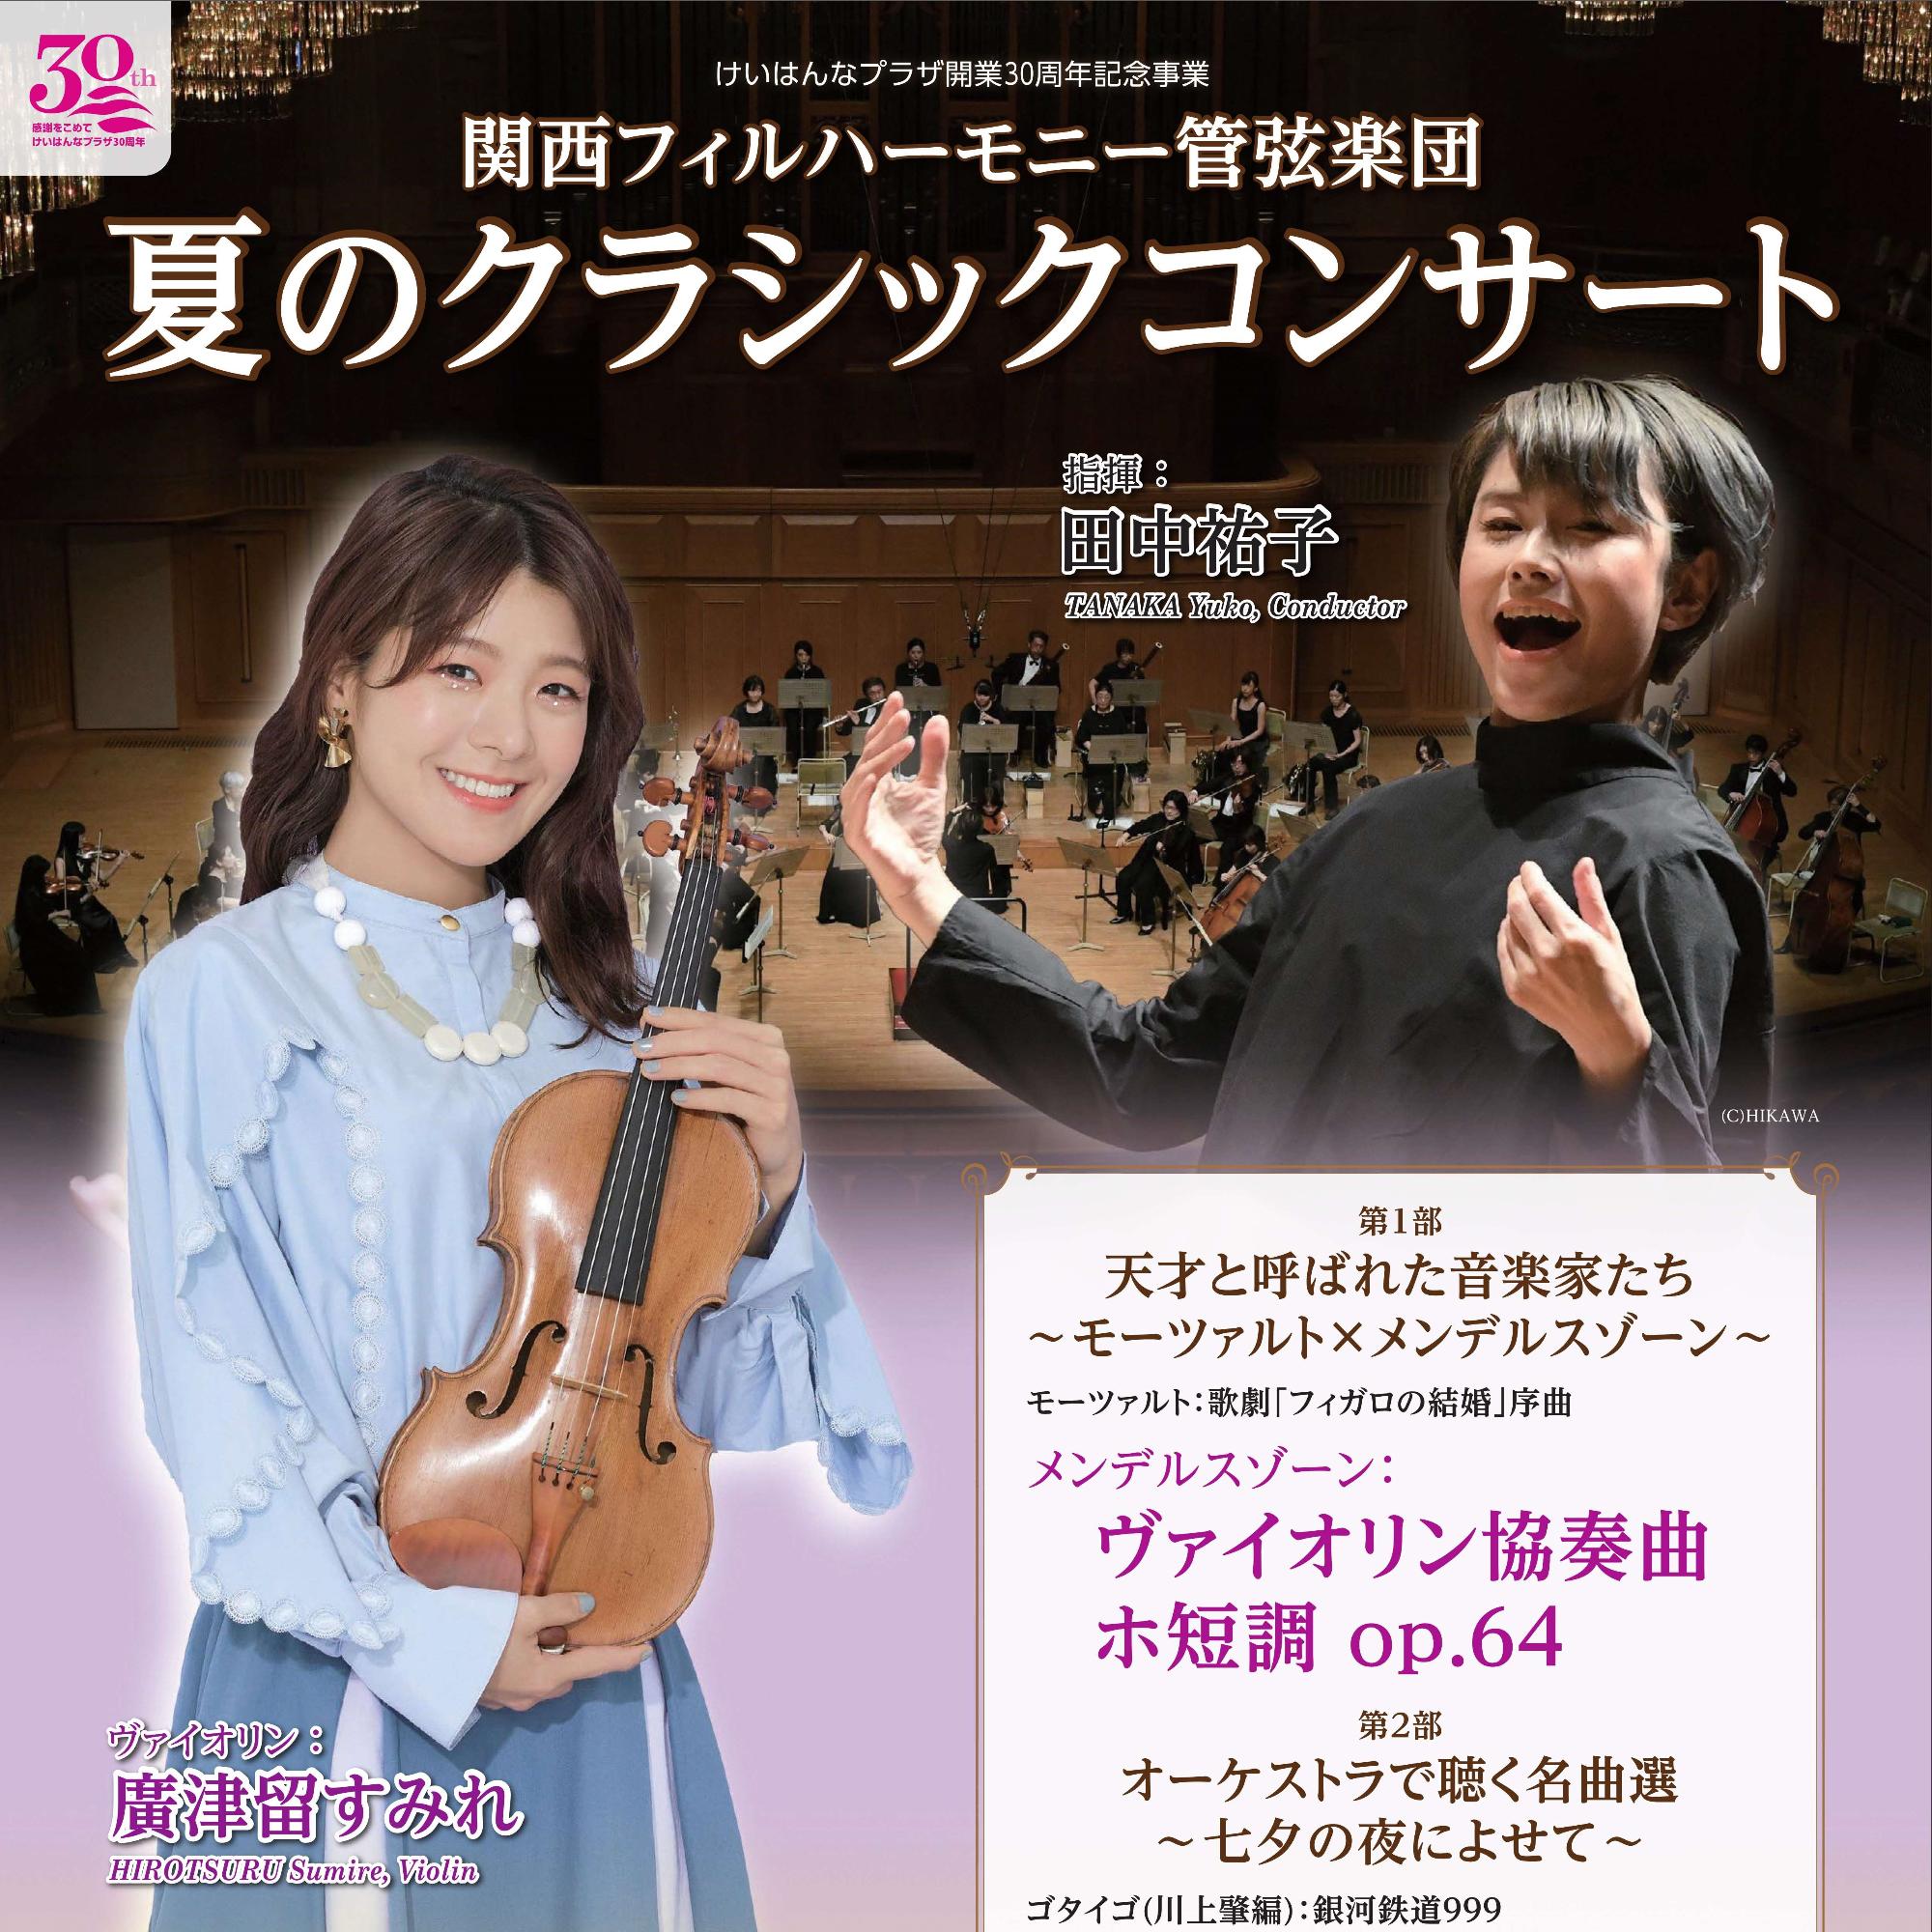 【7月8日】関西フィルハーモニー管弦楽団 夏のクラシックコンサート